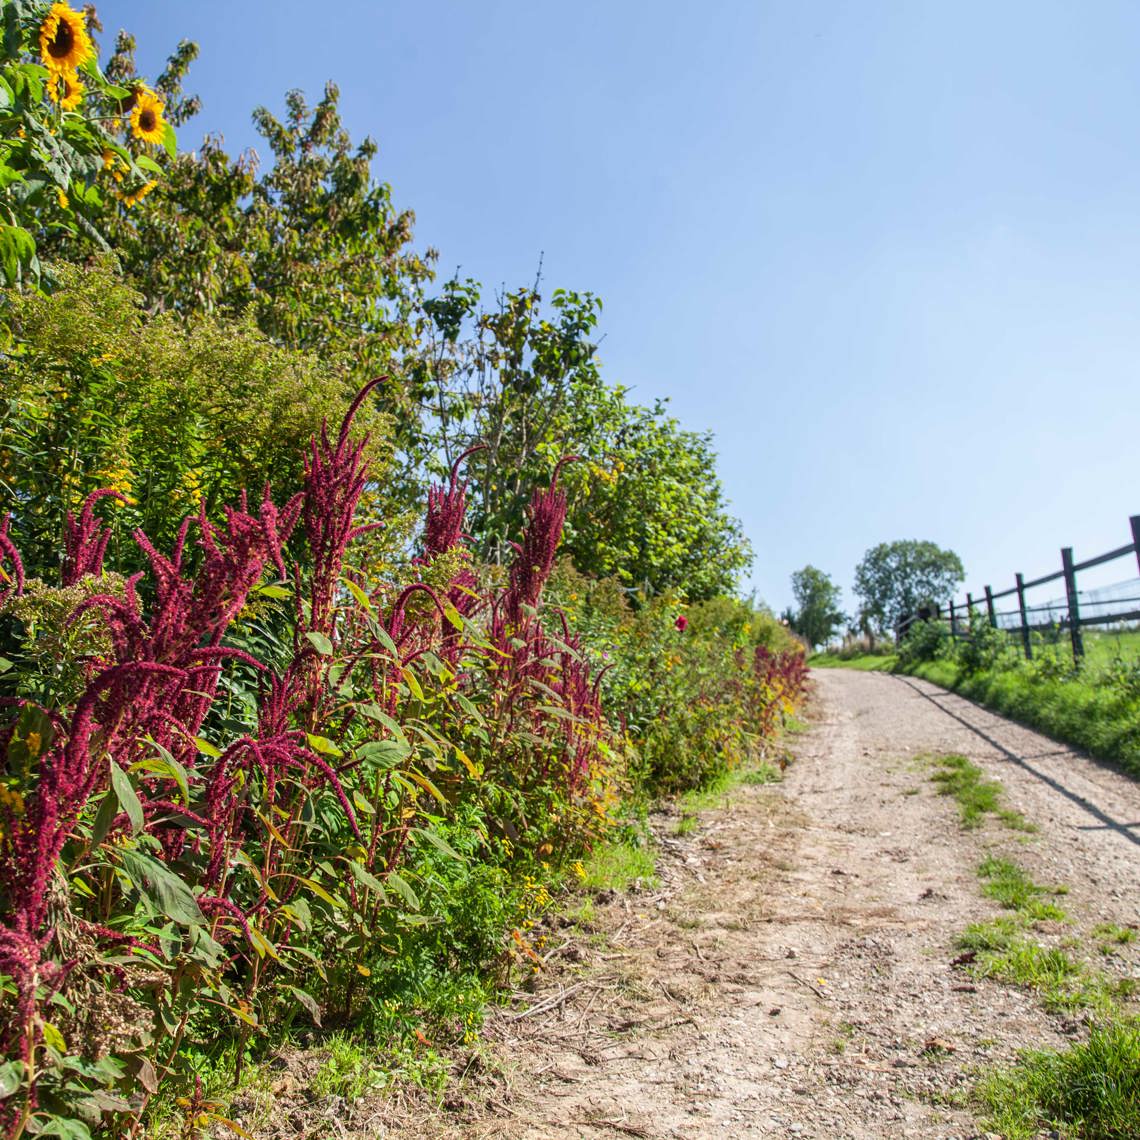 Voetpad in het heuvelland met rode bloemen en een hek langs een weiland